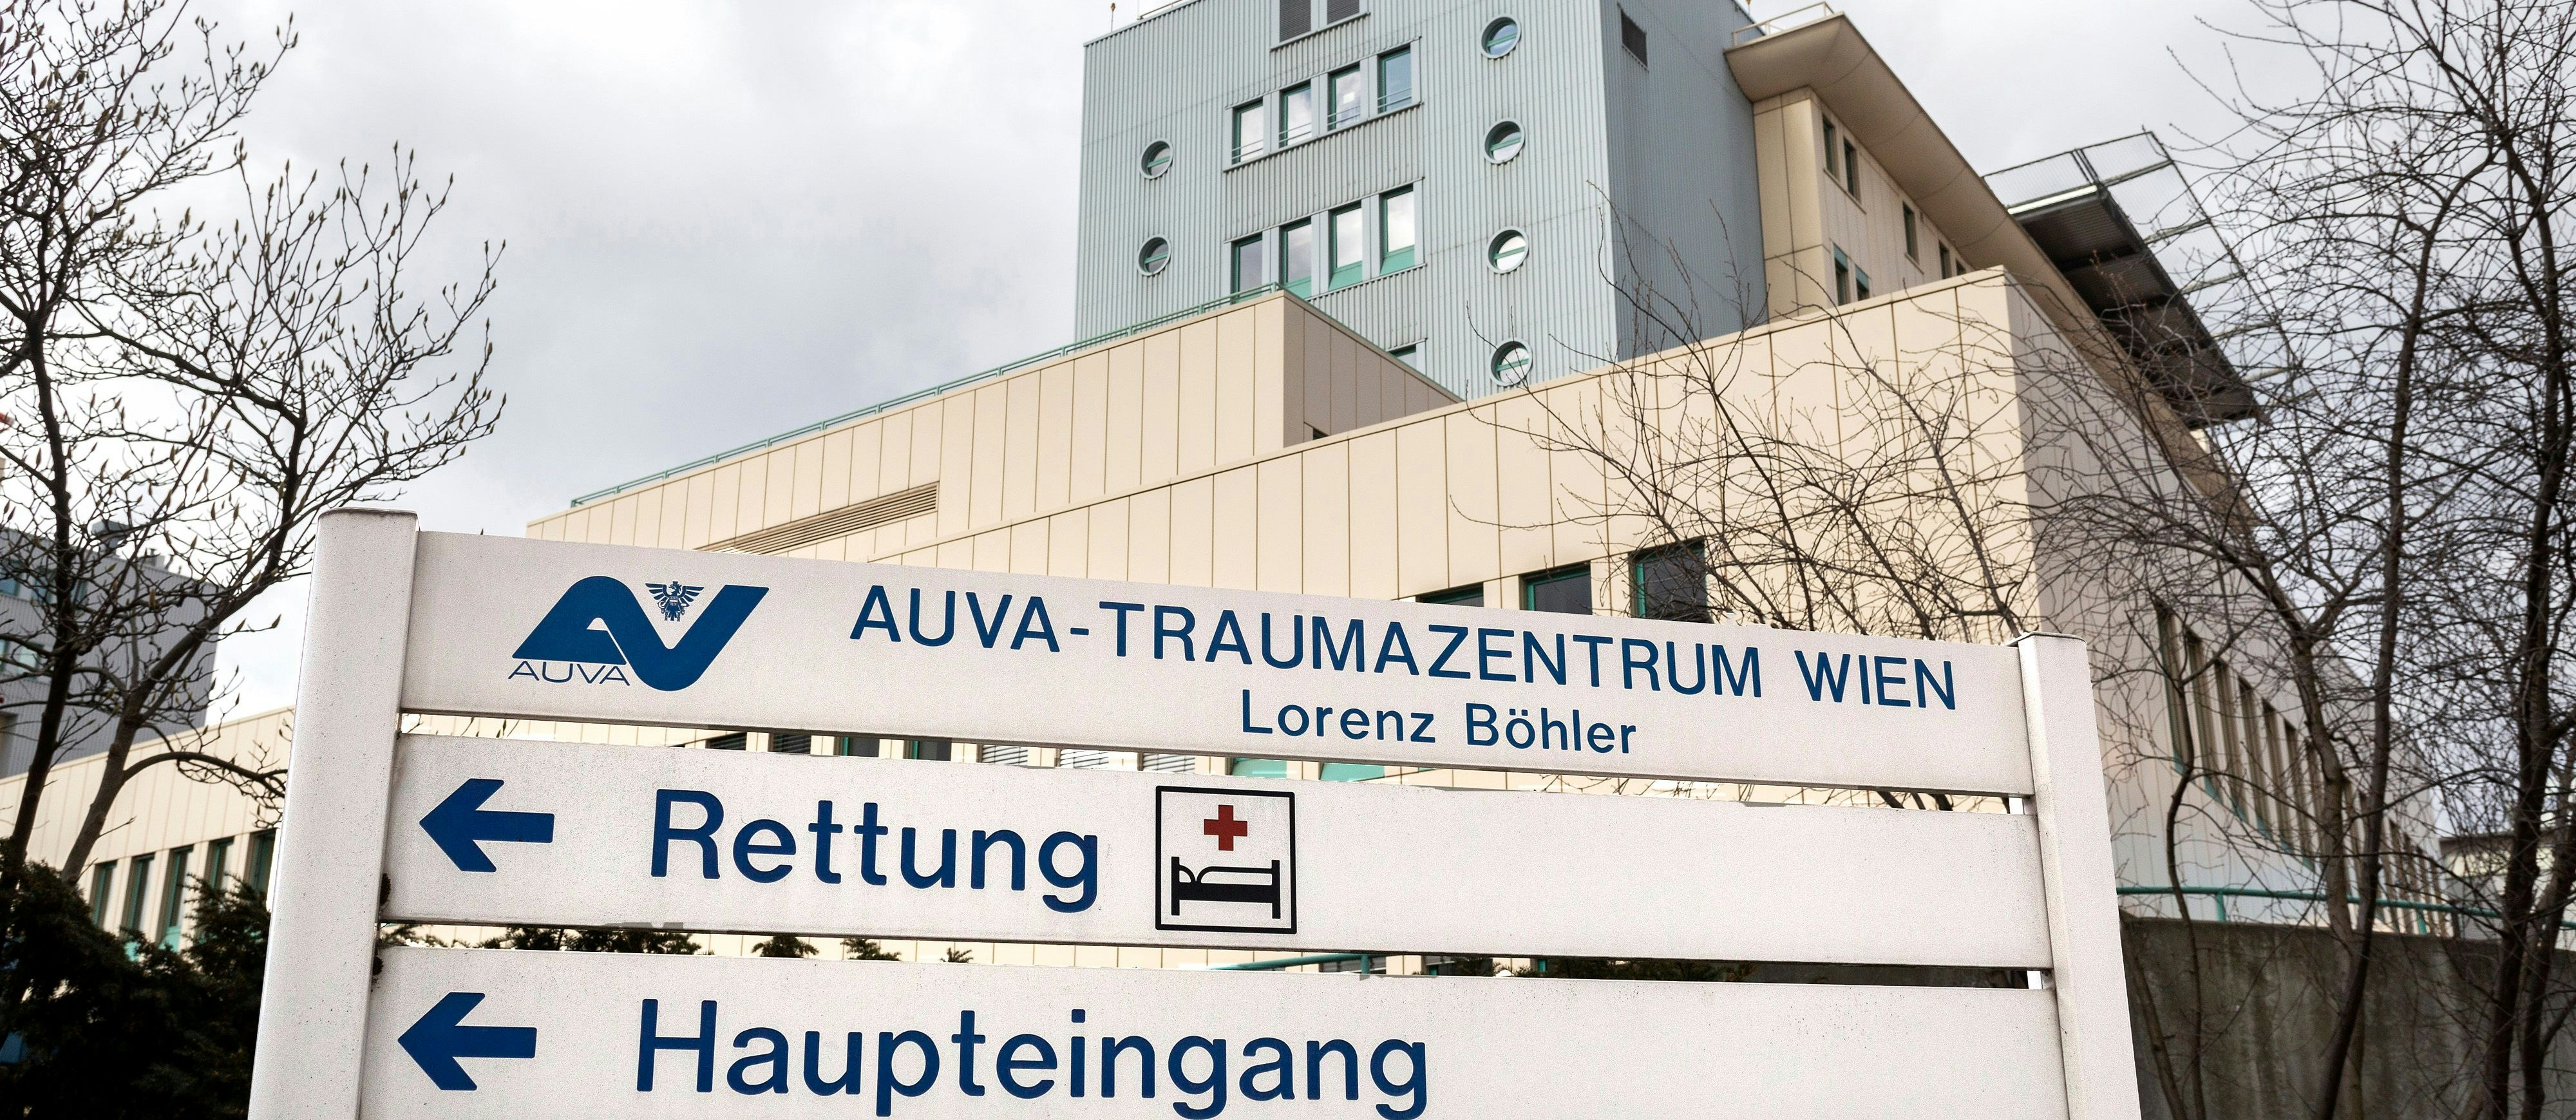 Das AUVA Traumazentrum Lorenz Böhler soll (vorübergehend?) zugesperrt werden